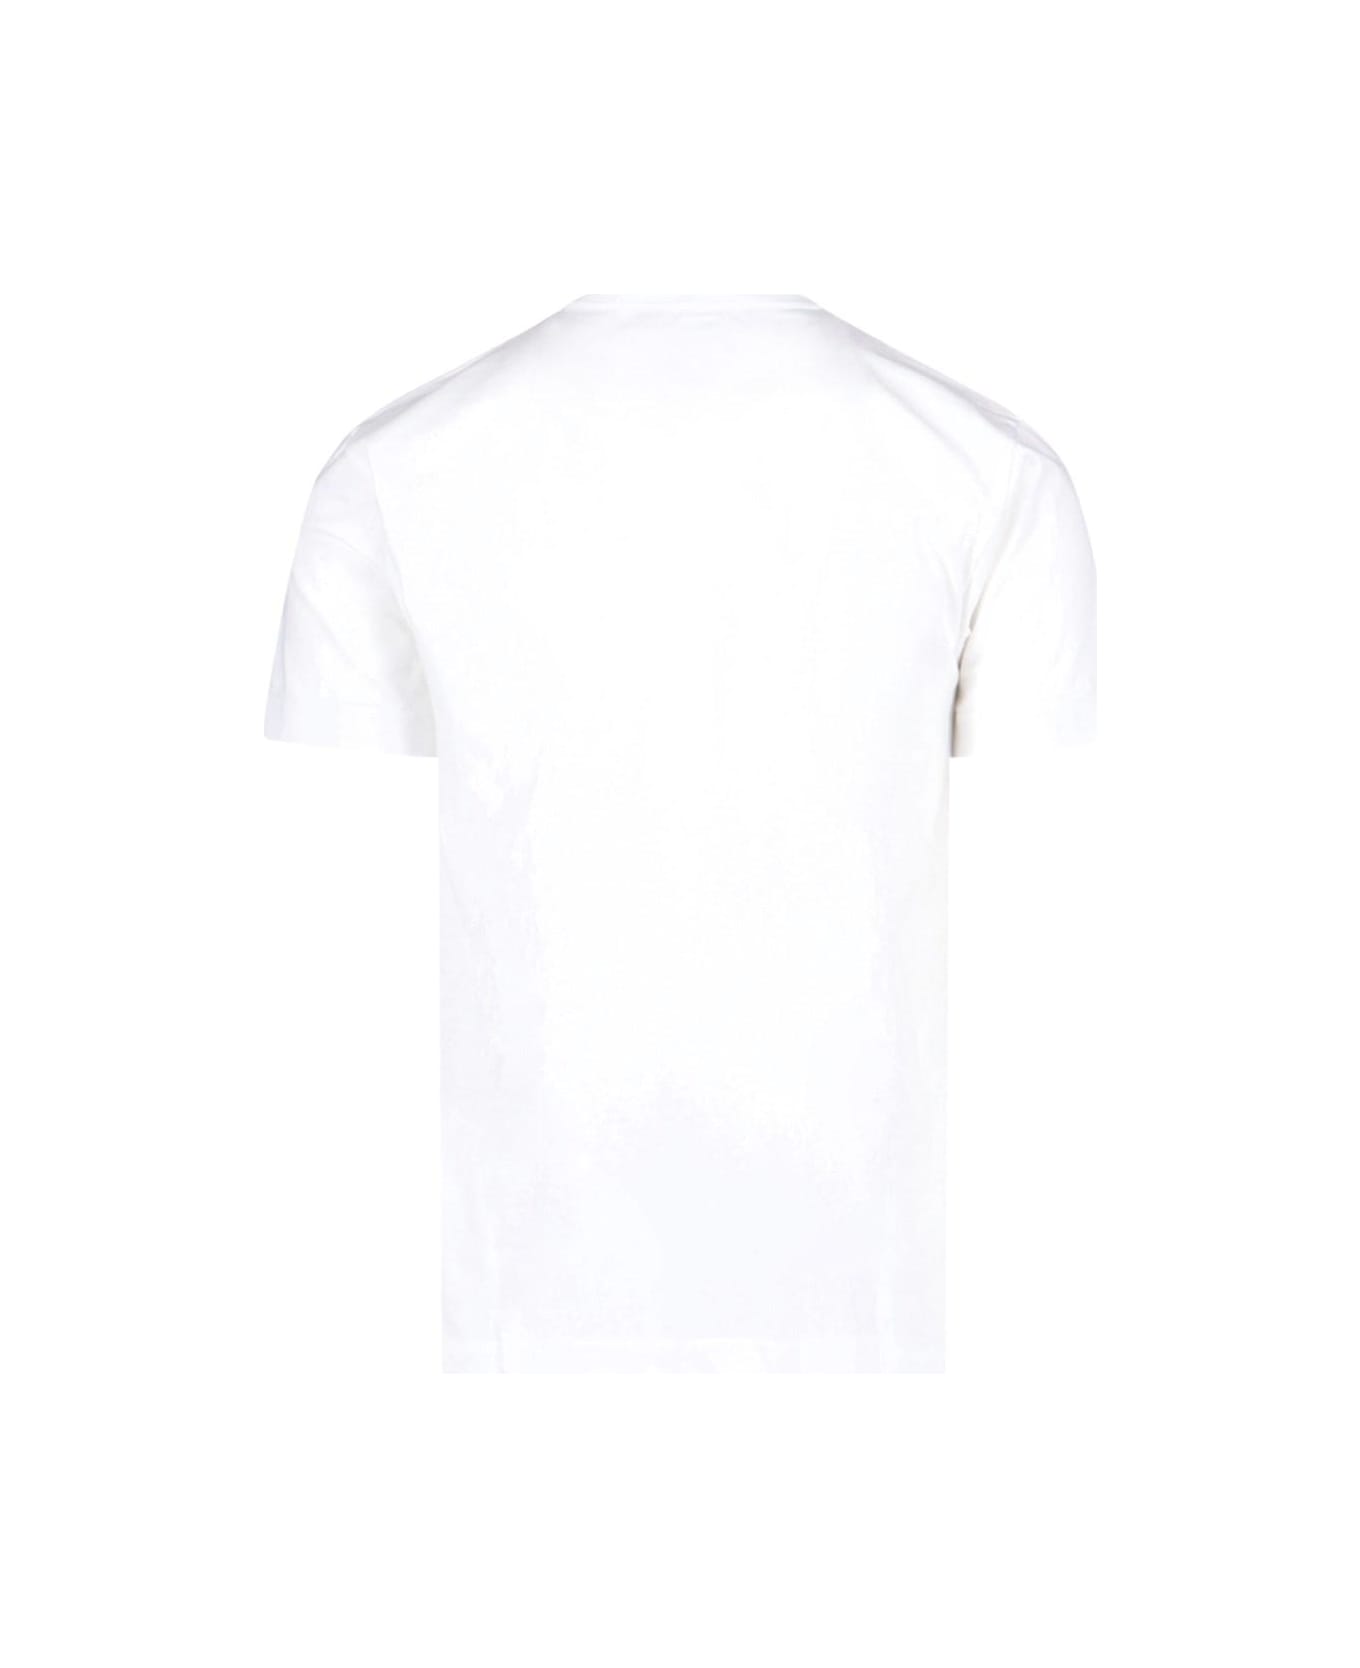 Comme des Garçons Play Double Logo T-shirt - White